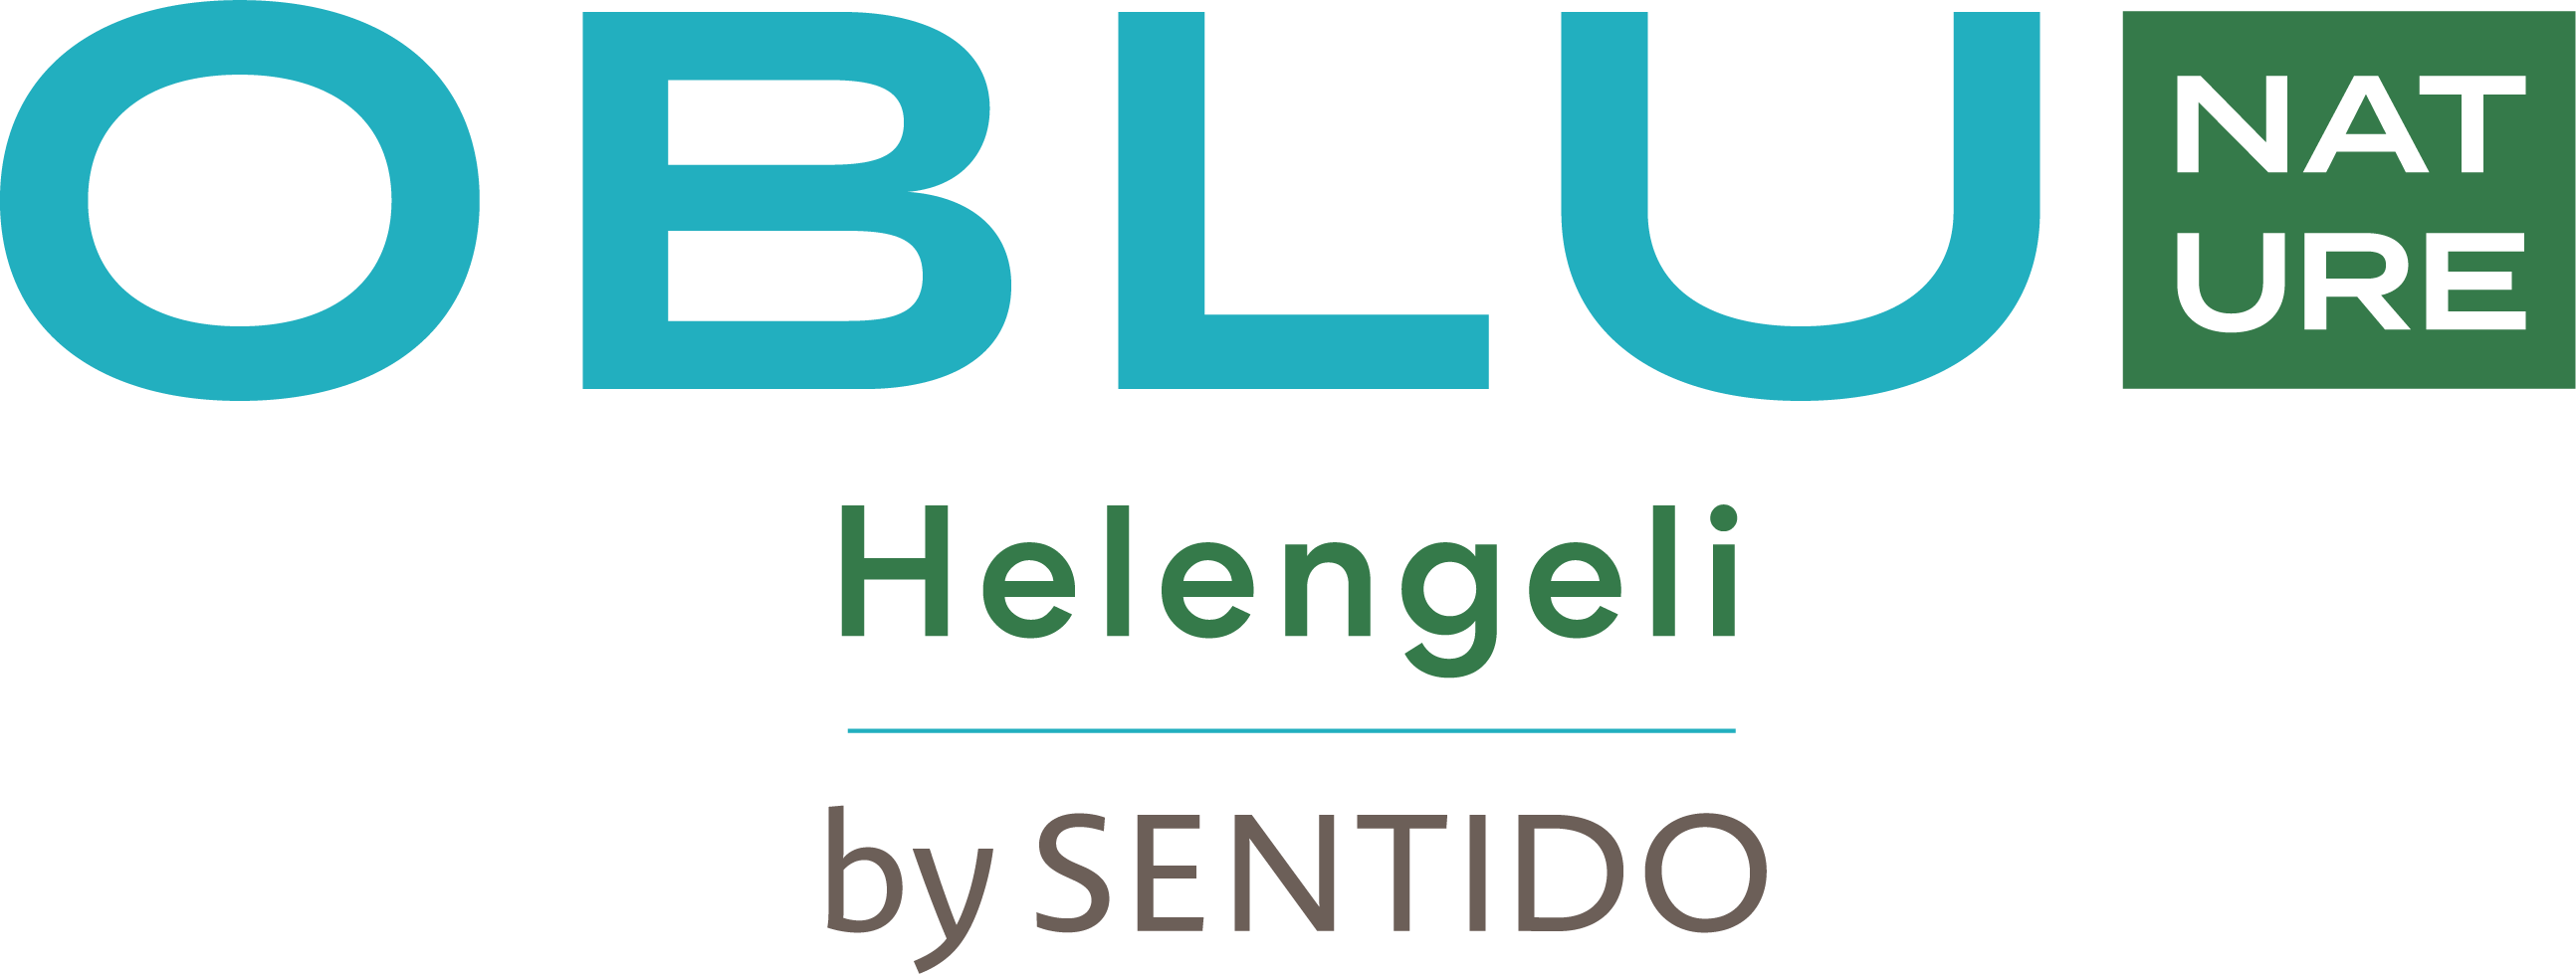 OBLU NATURE HELENGELI BY SENTIDO - LOGO